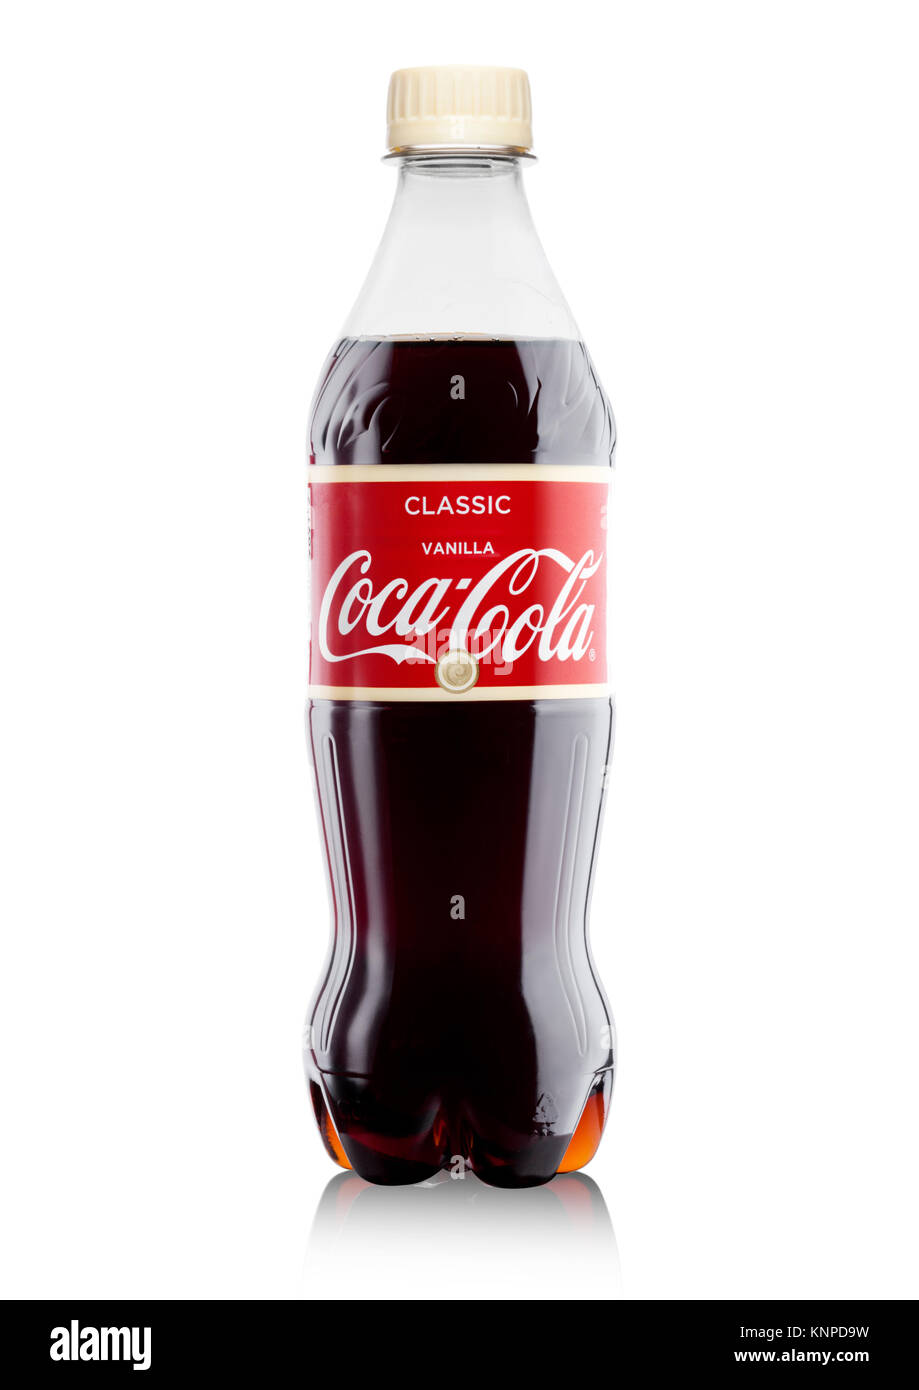 LONDON, Großbritannien - 07 Dezember, 2017: Flasche Vanille Coca-Cola auf weißem Hintergrund. Coca-Cola ist einer der beliebtesten Soda Produkte in der Welt. Stockfoto